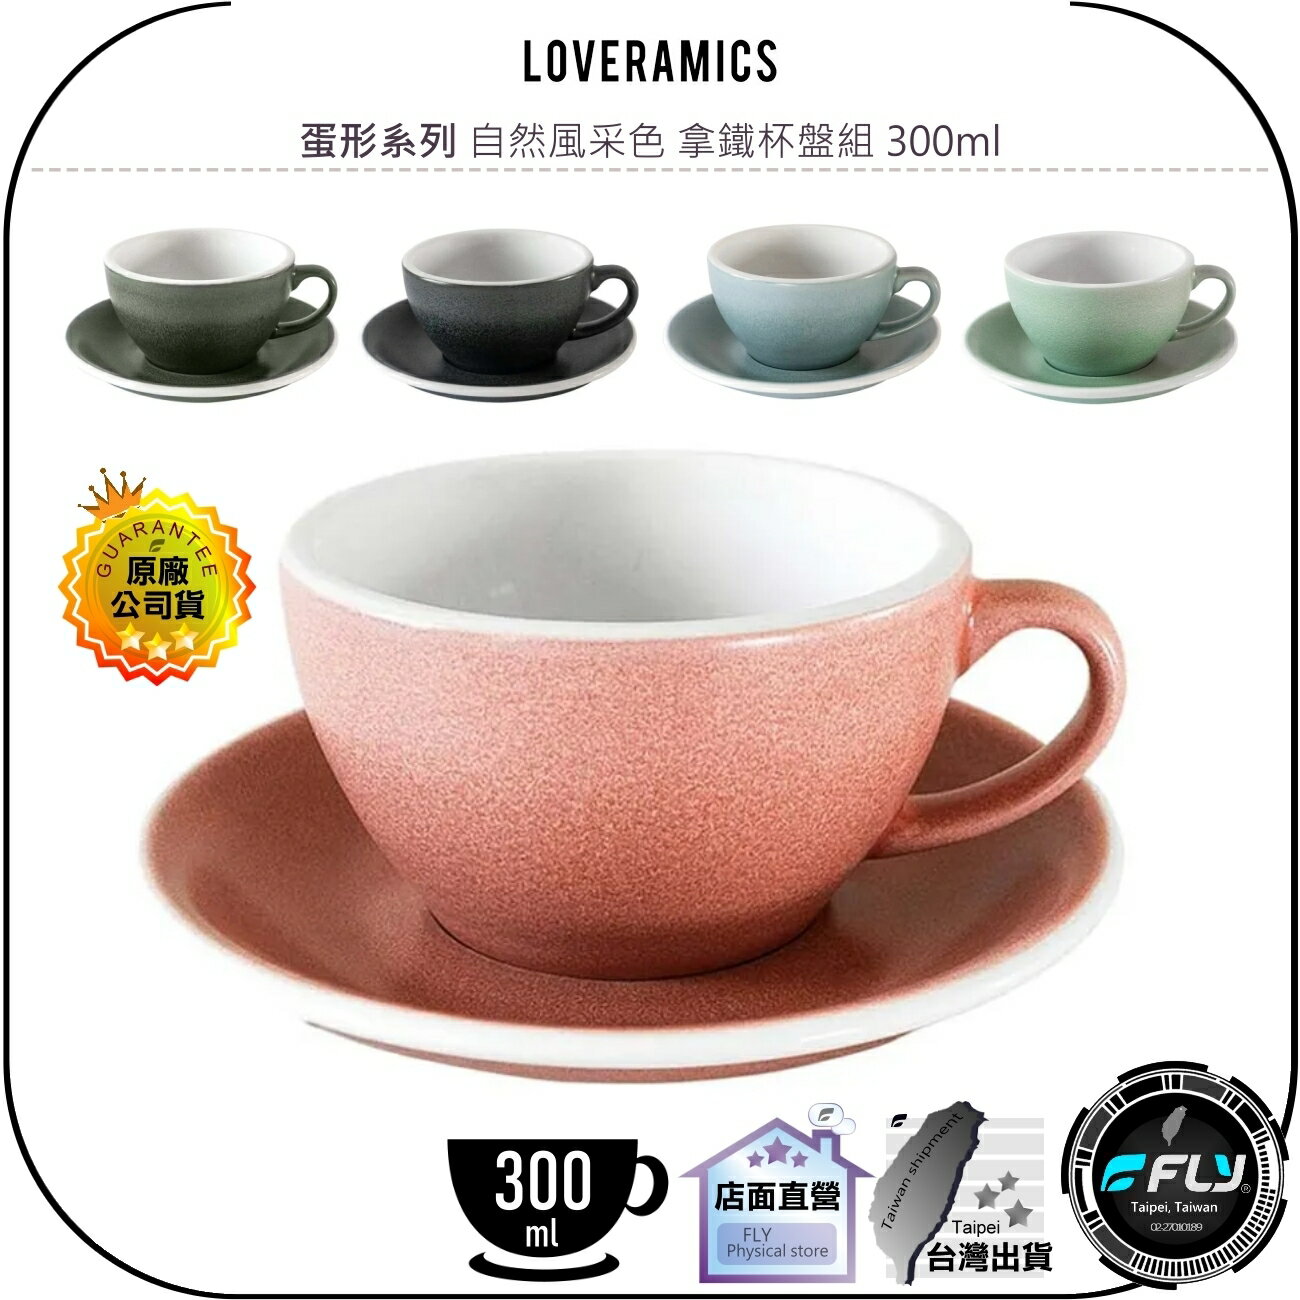 【飛翔商城】LOVERAMICS 愛陶樂 蛋形系列 自然風采色 拿鐵杯盤組 300ml◉公司貨◉陶瓷咖啡杯